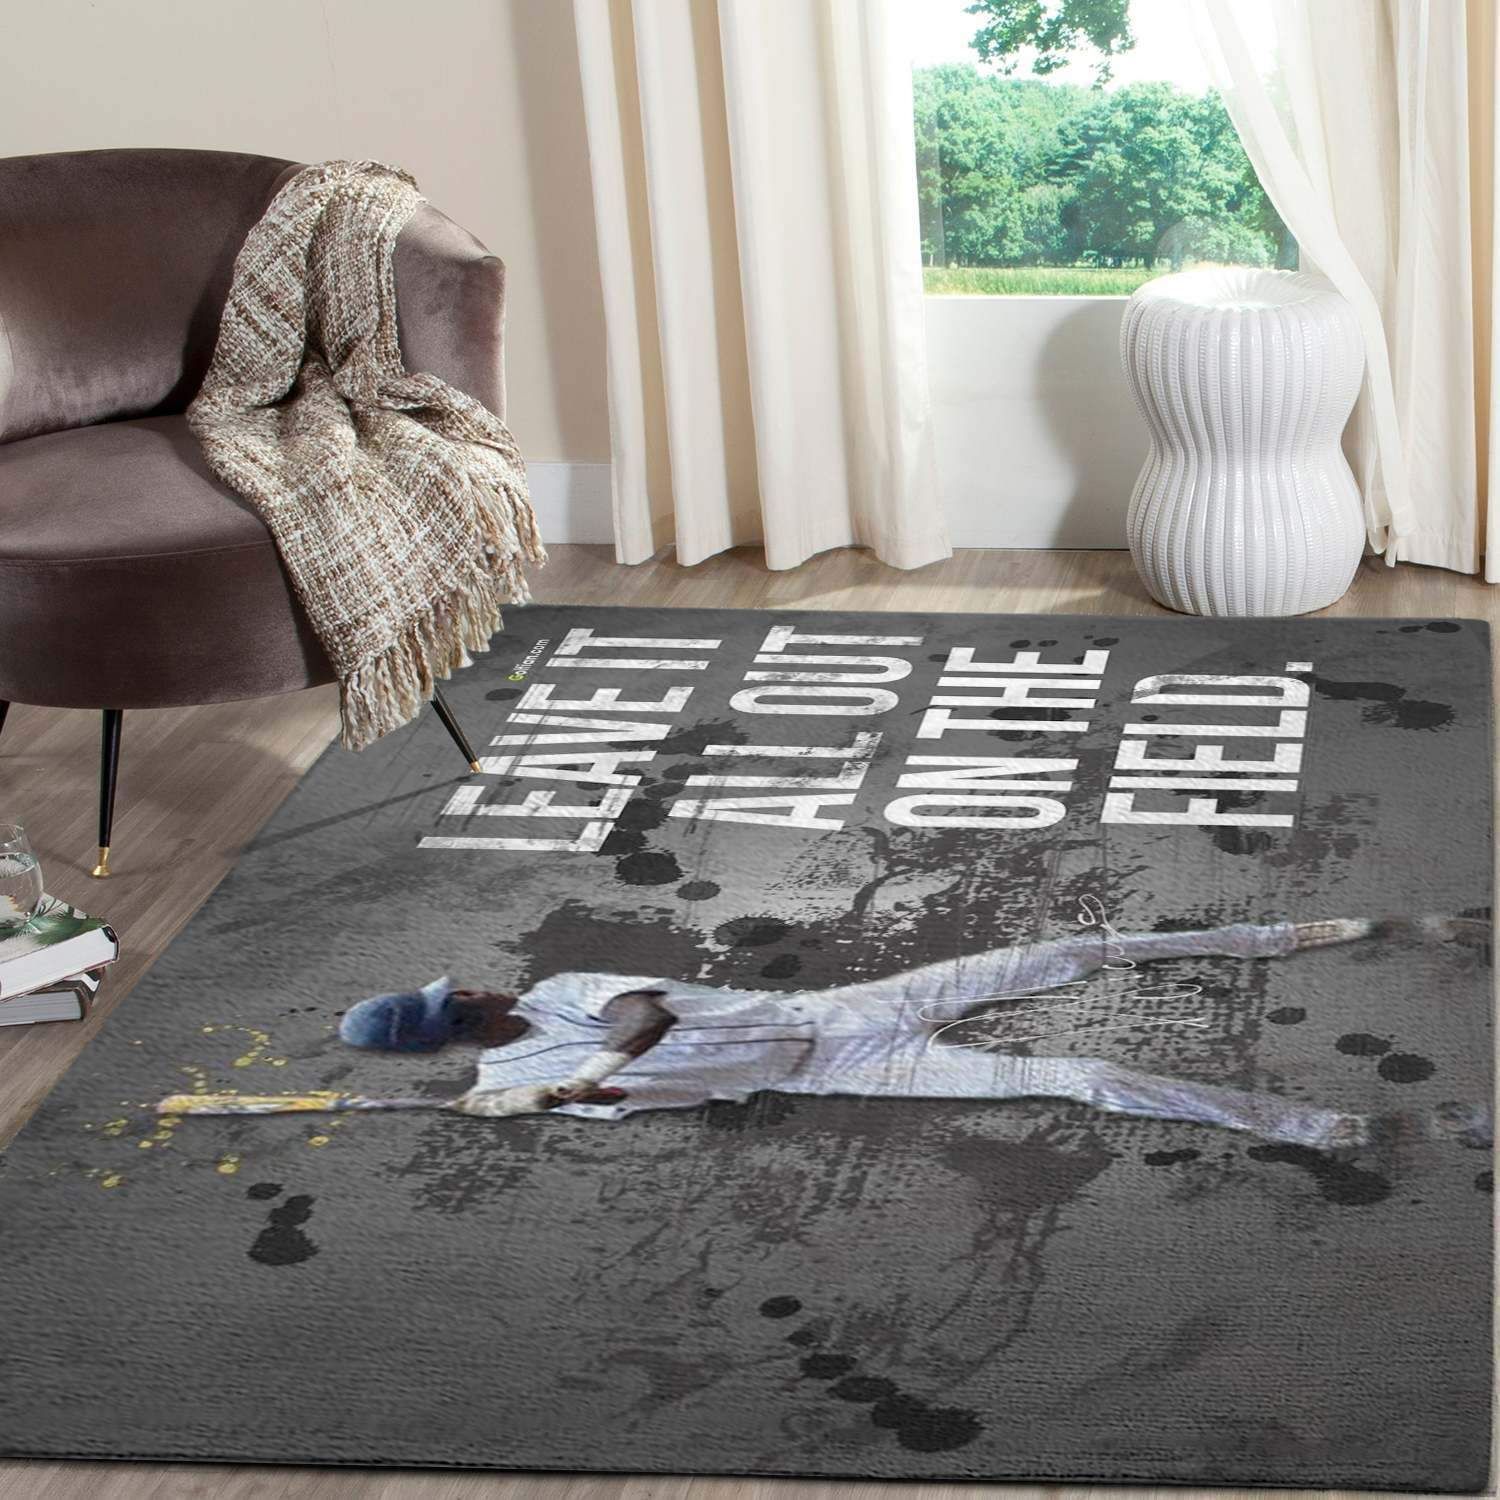 Baseball Of Legends Area Rugs Living Room Carpet Christmas Gift Floor Decor Rcdd81F32990